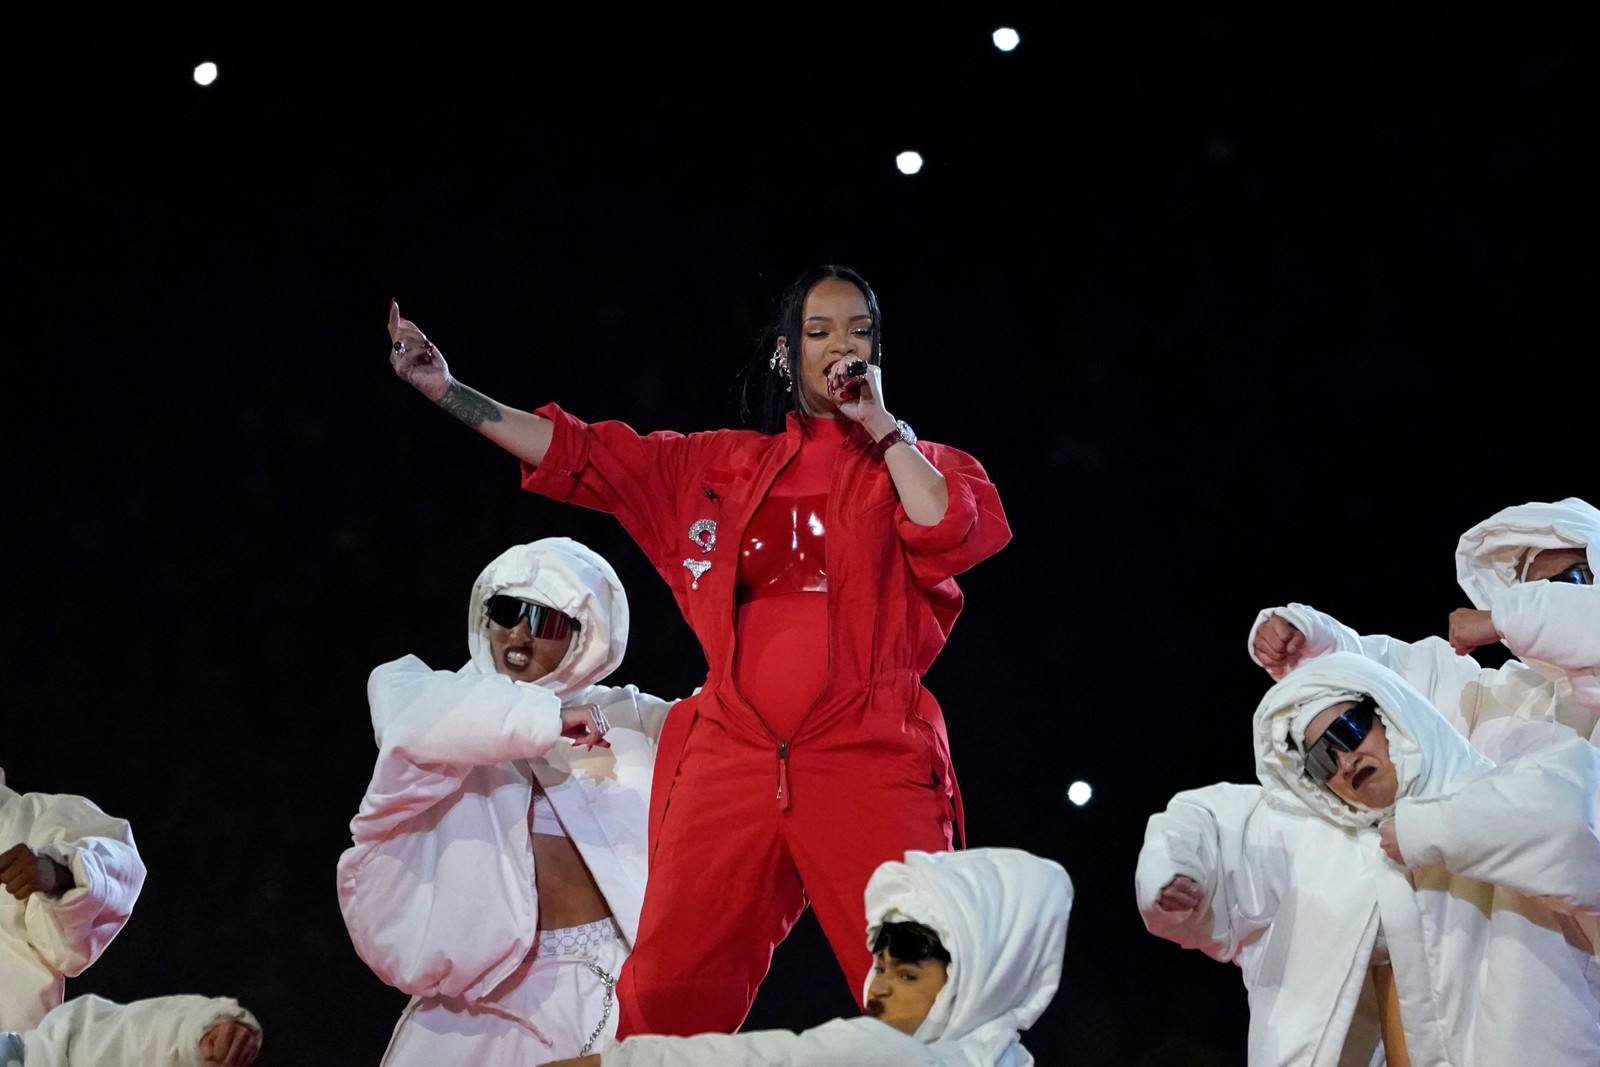 Representantes de Rihanna confirmam gravidez do segundo filho de Rihanna, depois de barriga chamar atenção no Super Bowl — Foto: TIMOTHY A. CLARY/AFP